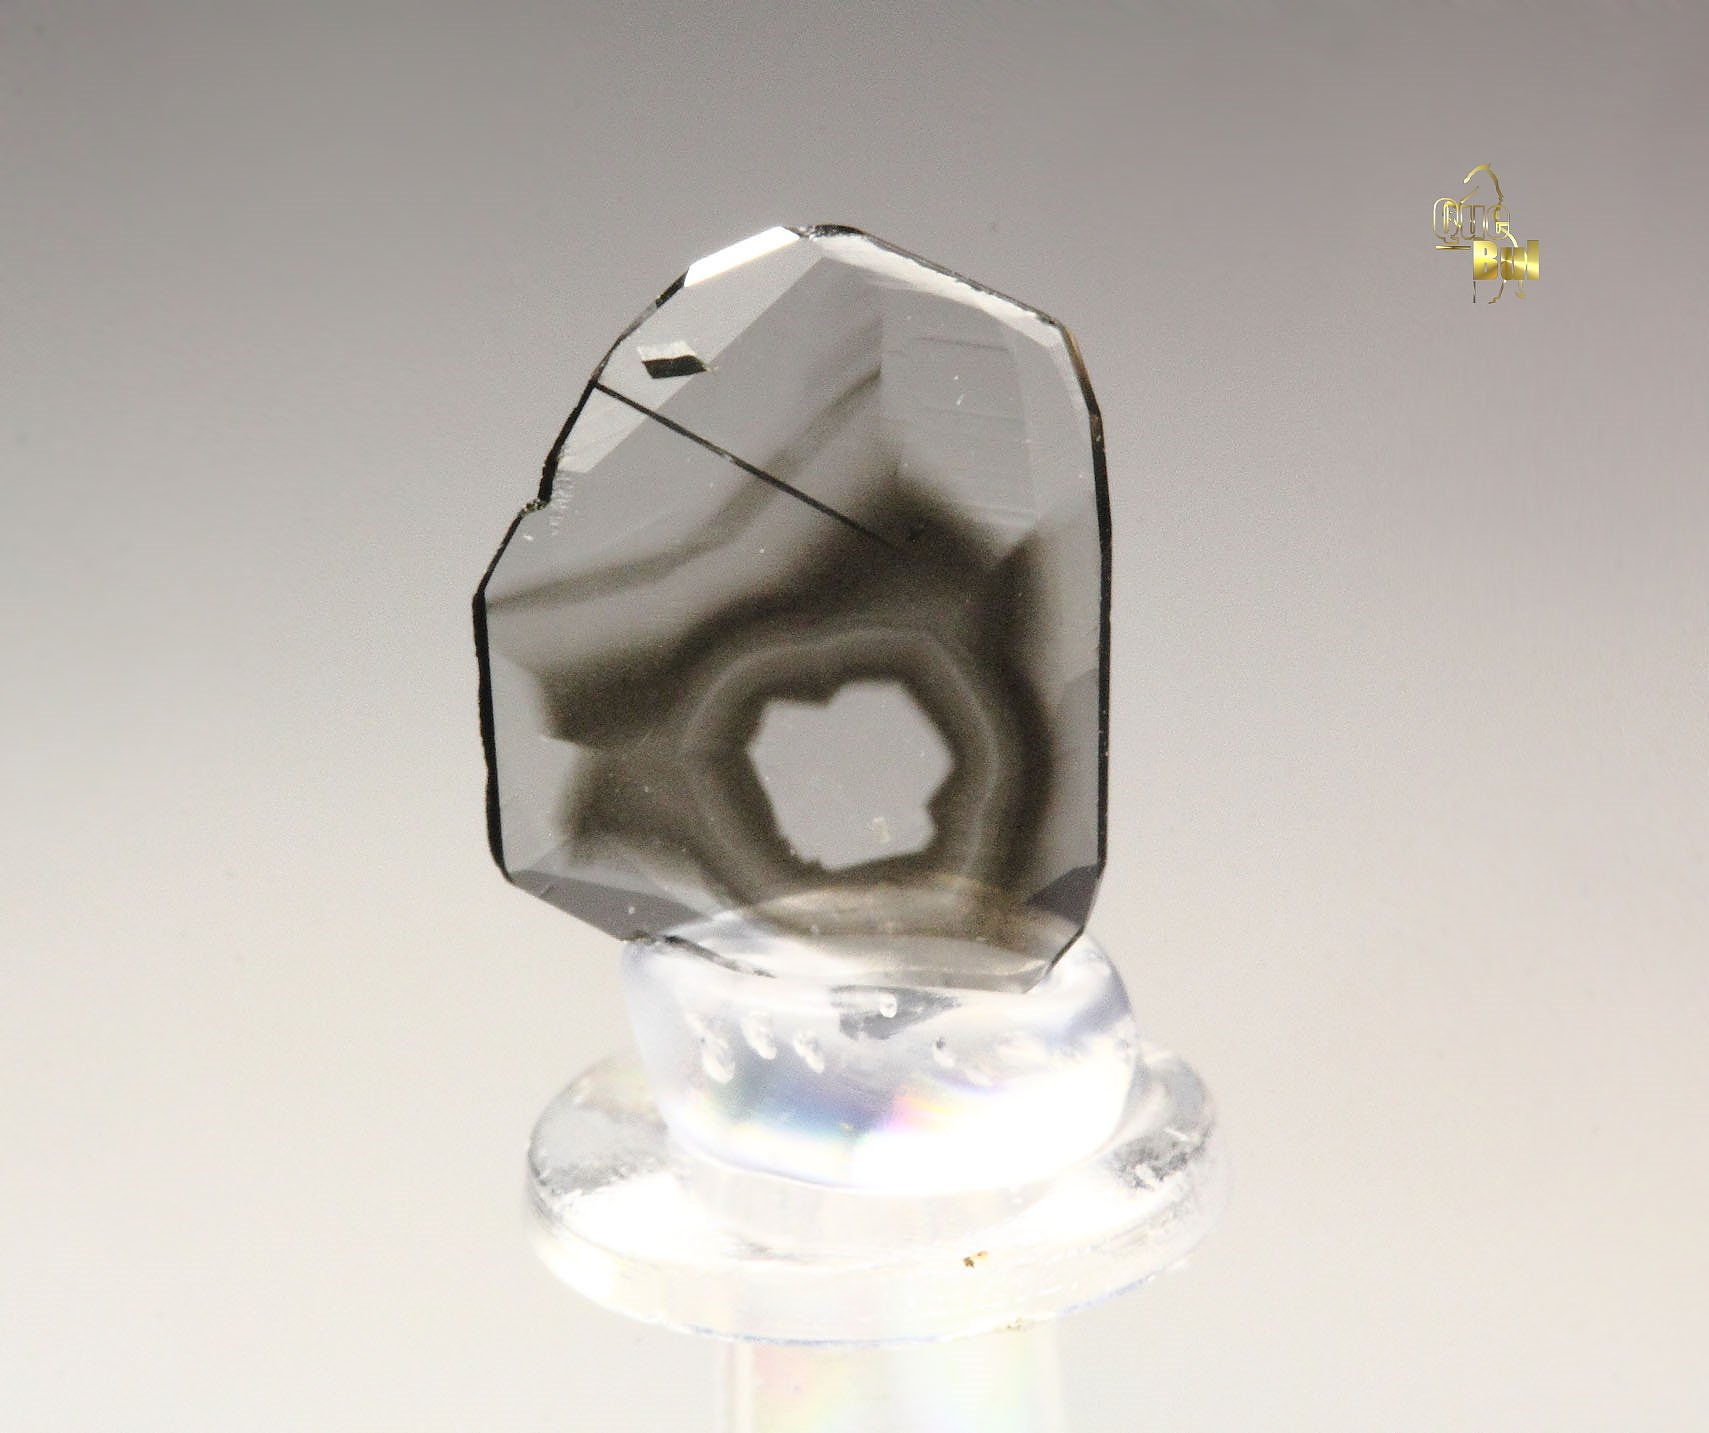 gem DIAMOND with phantom